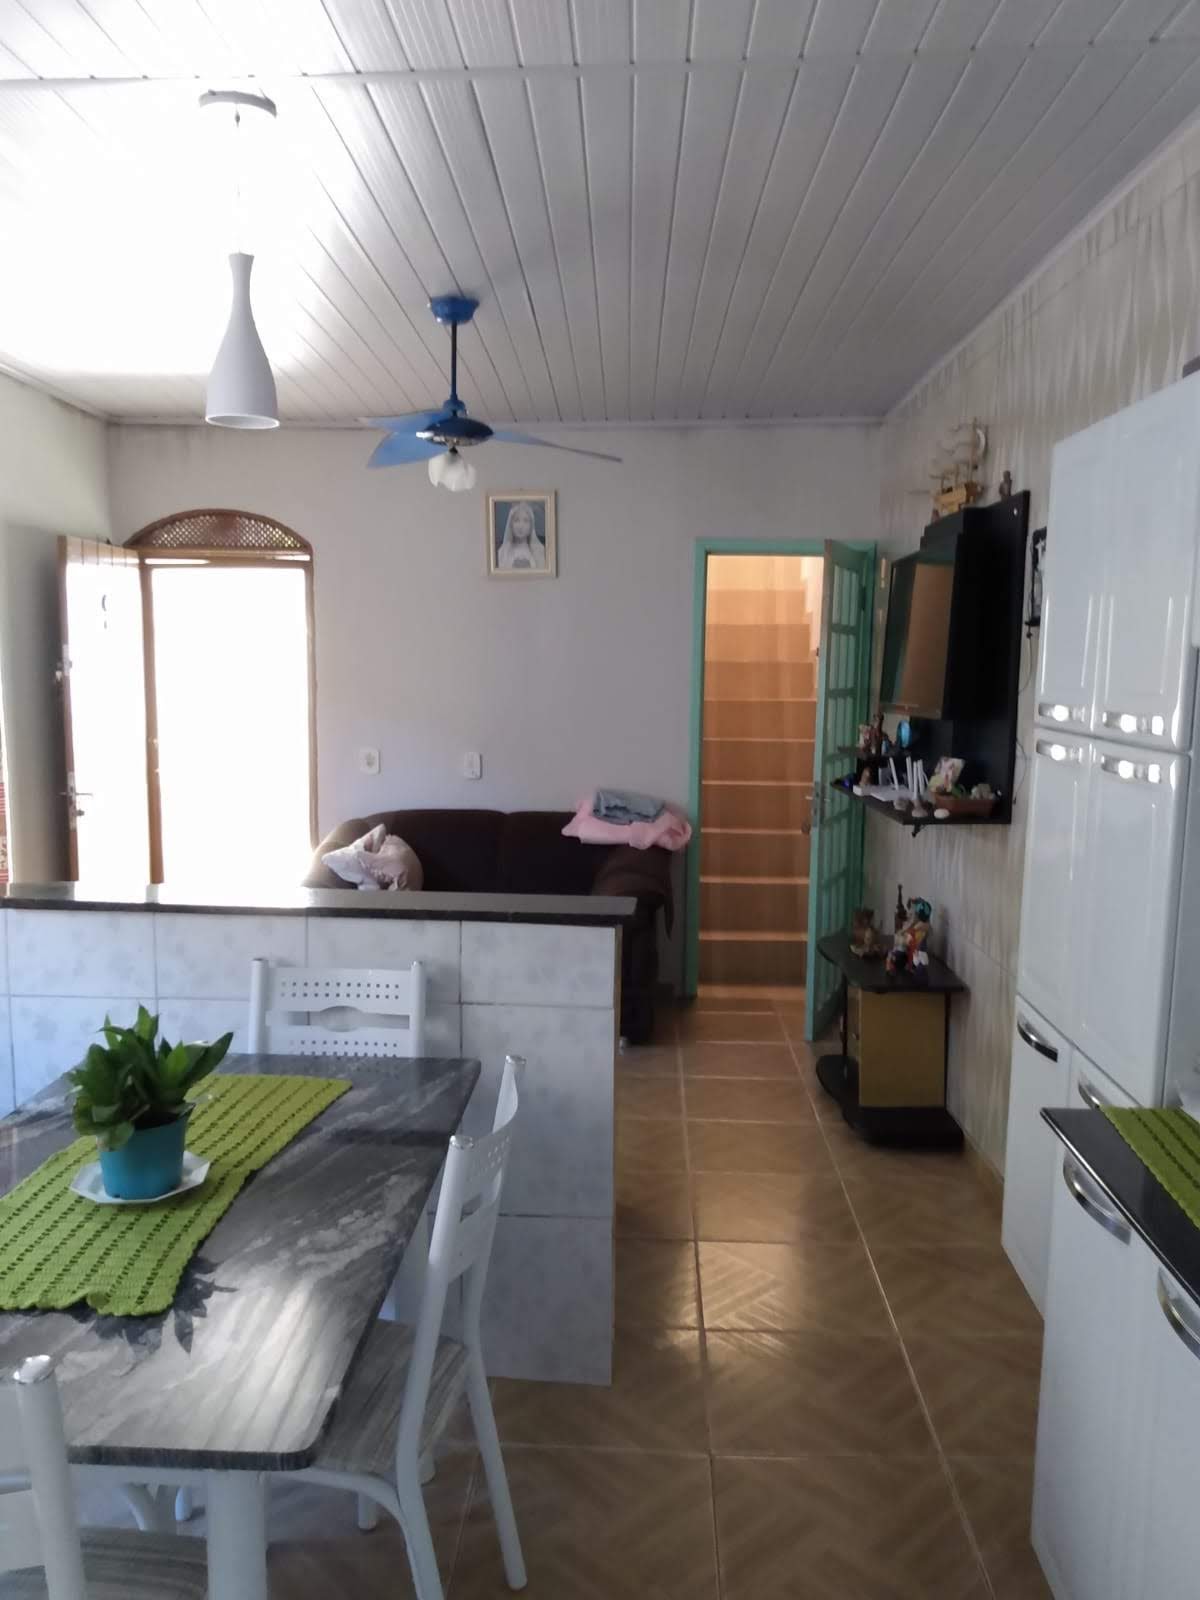 Casa em Mongaguá 3 quartos, uma suíte, sala, cozinha estilo americana, 2 banheiros social, churrasqueira   | código 1061